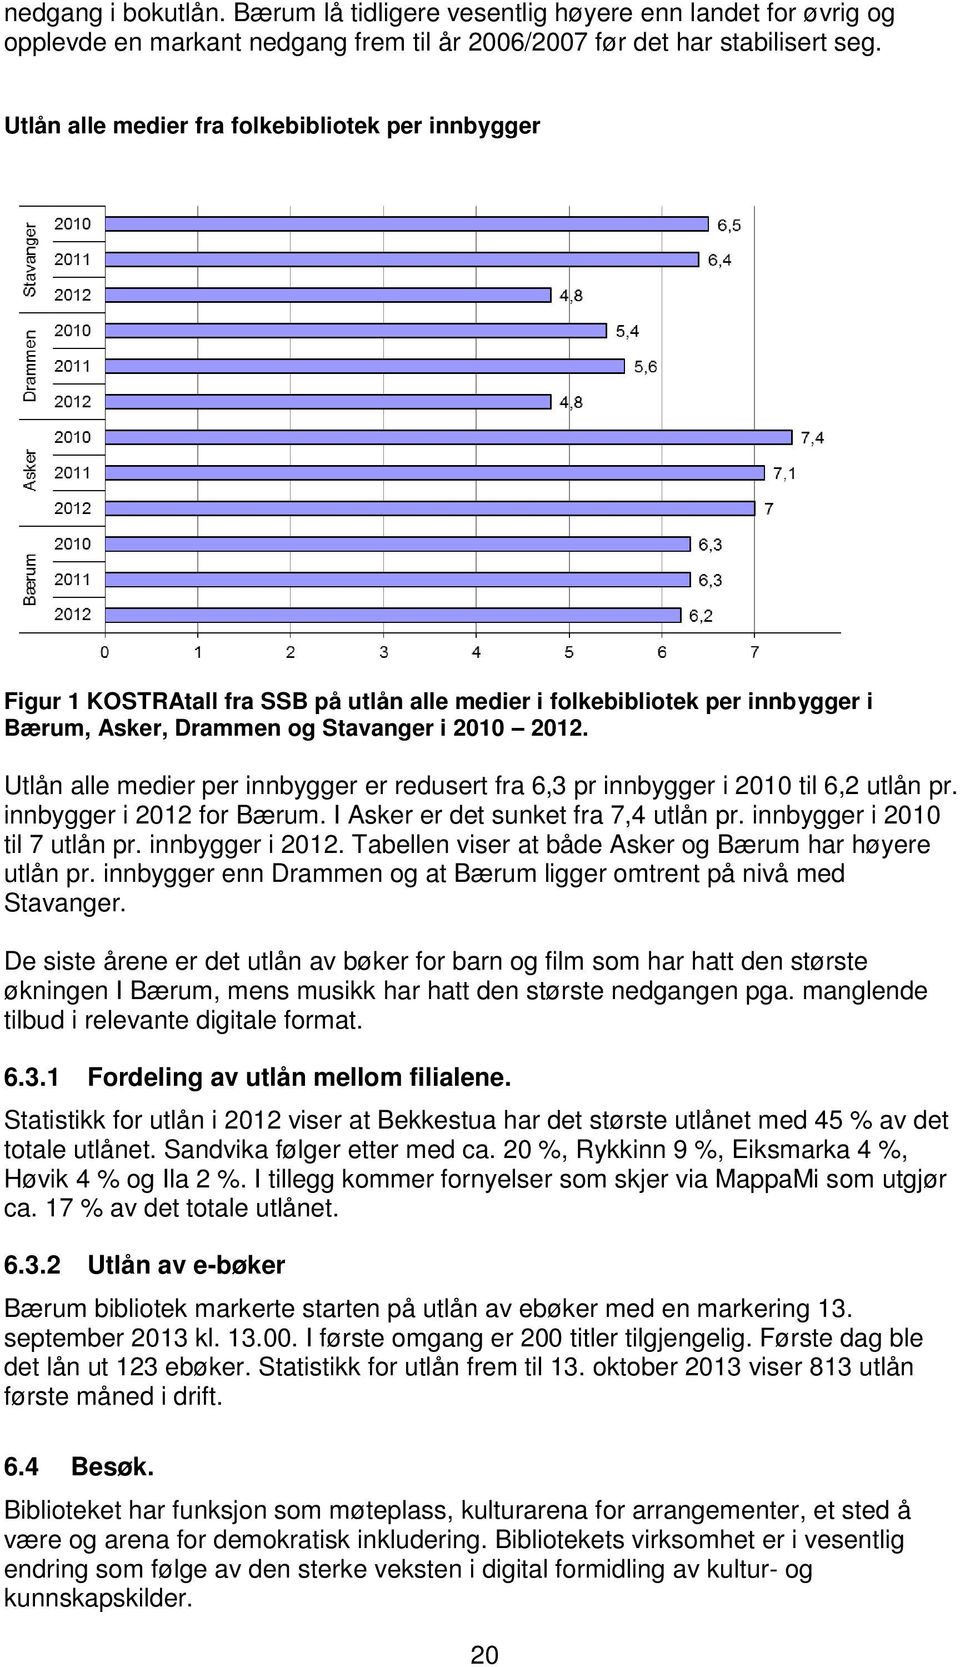 Utlån alle medier per innbygger er redusert fra 6,3 pr innbygger i 2010 til 6,2 utlån pr. innbygger i 2012 for Bærum. I Asker er det sunket fra 7,4 utlån pr. innbygger i 2010 til 7 utlån pr.